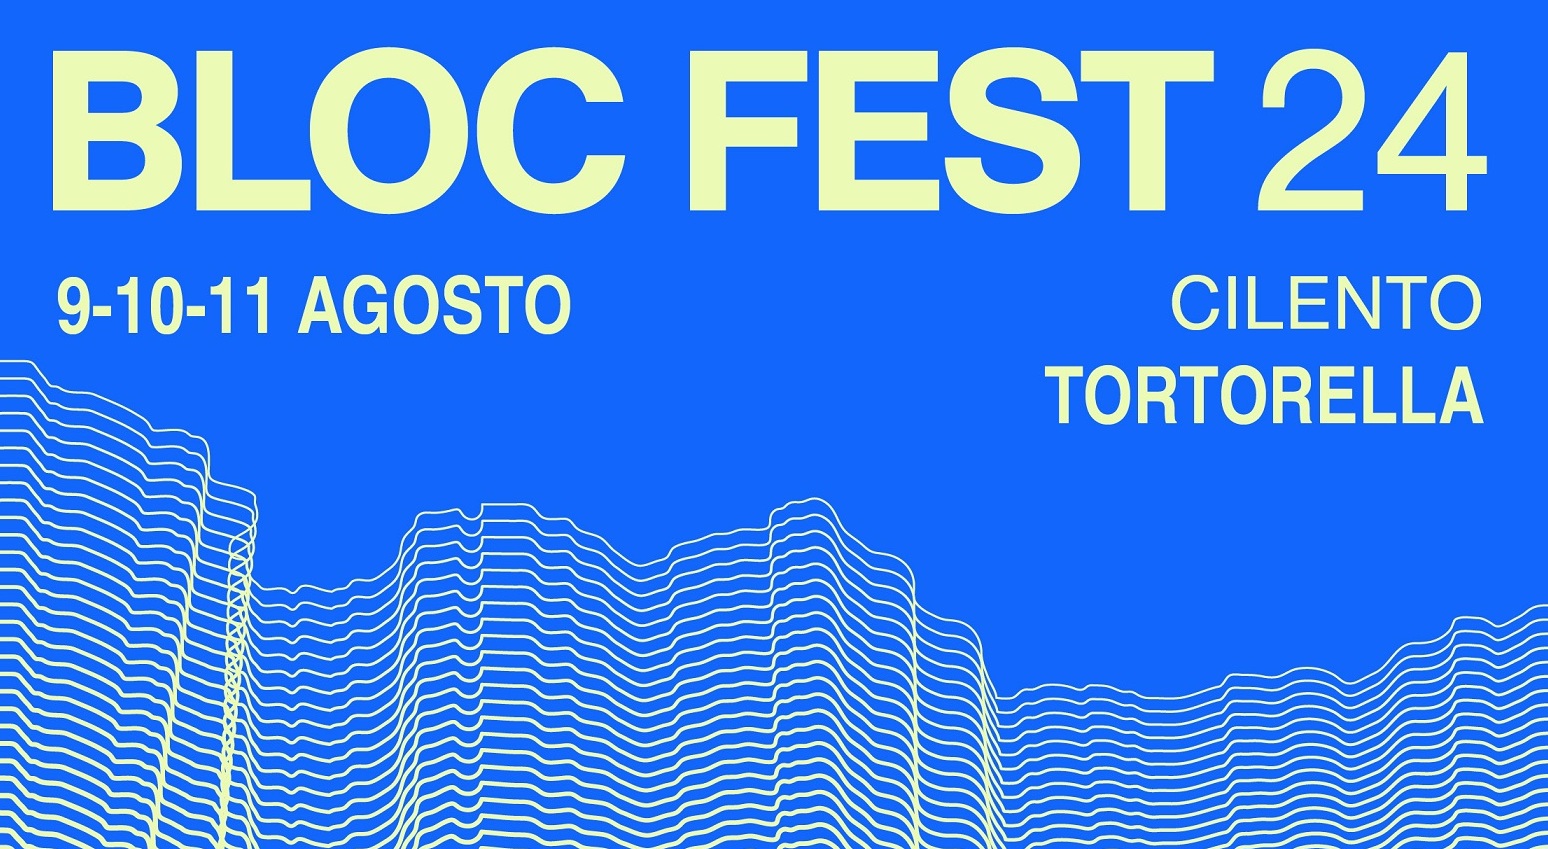 Bloc Fest, il borgo di Tortorella palcoscenico del festival diffuso: 13 artisti tra dj internazionali e nuovi talenti